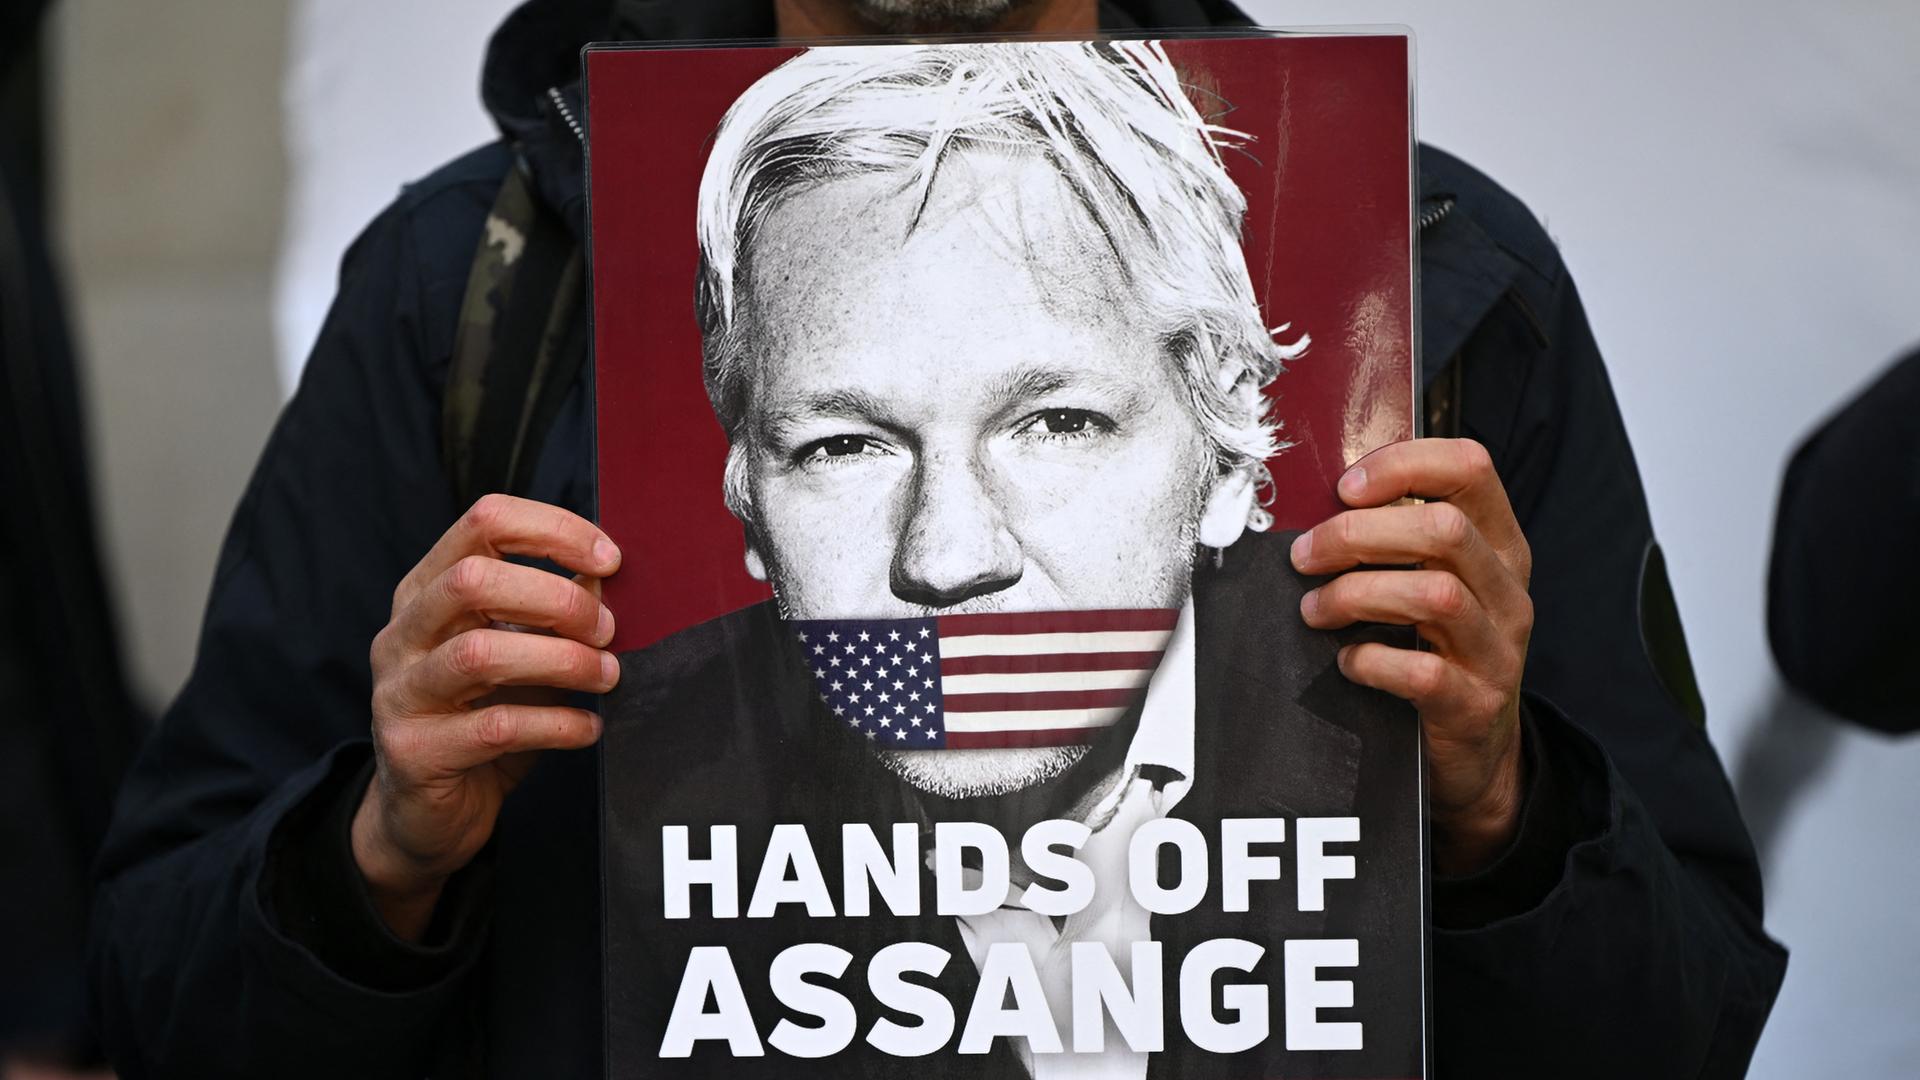 Ein Aktivist hält ein Plakat von WikiLeaks Gründer Julian Assange, der den Mund mit einer amerikanischen Flagge zugeklebt hat. Der Text darauf lautet: "Hands off Assange. Don't shoot the Messenger", London, April 2022.